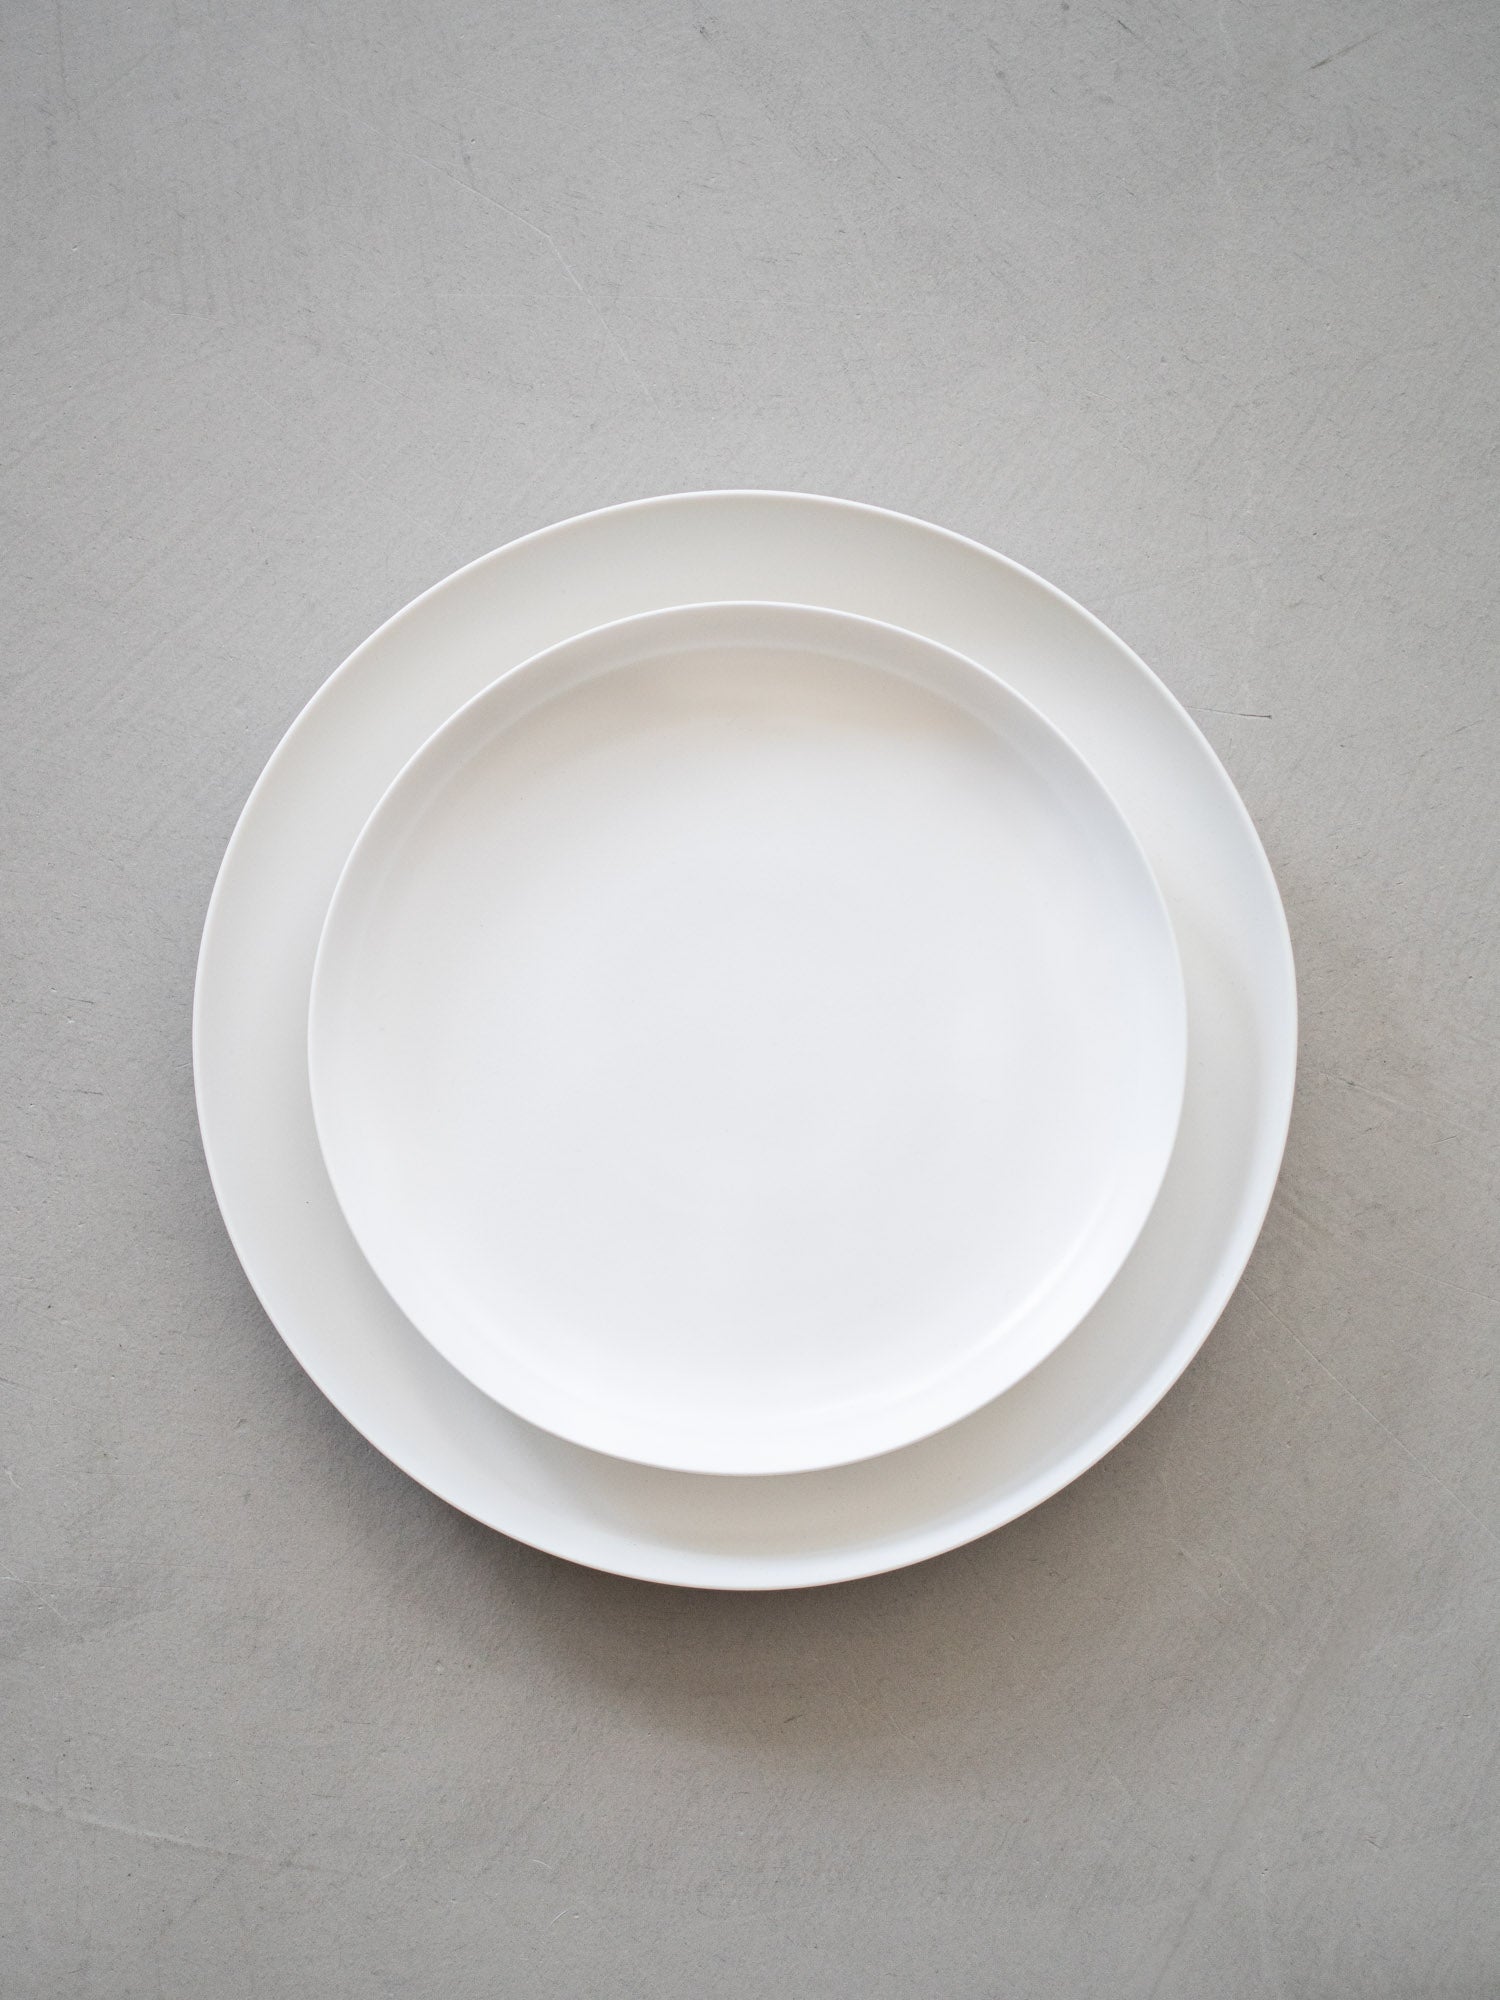 ReIRABO Dinner Plate – Quiet White